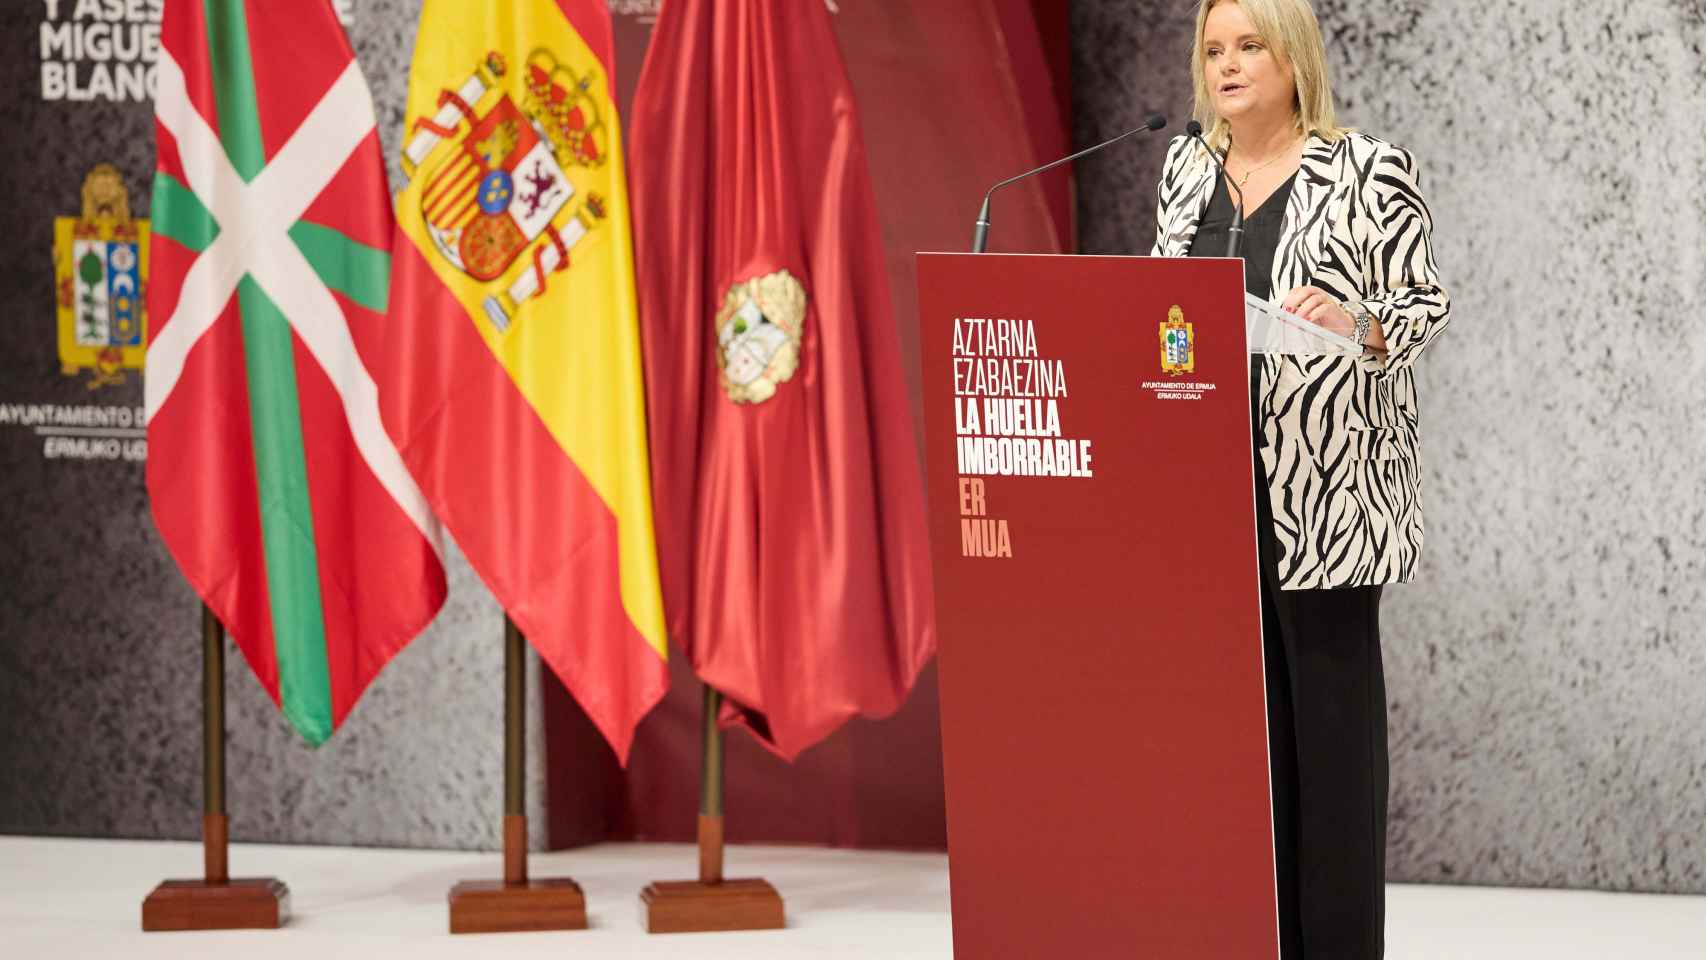 La hermana de Miguel Ángel Blanco, Marimar Blanco, durante su intervención en el homenaje a Miguel Ángel Blanco, en Ermua / Ion Alcoba - EUROPA PRESS